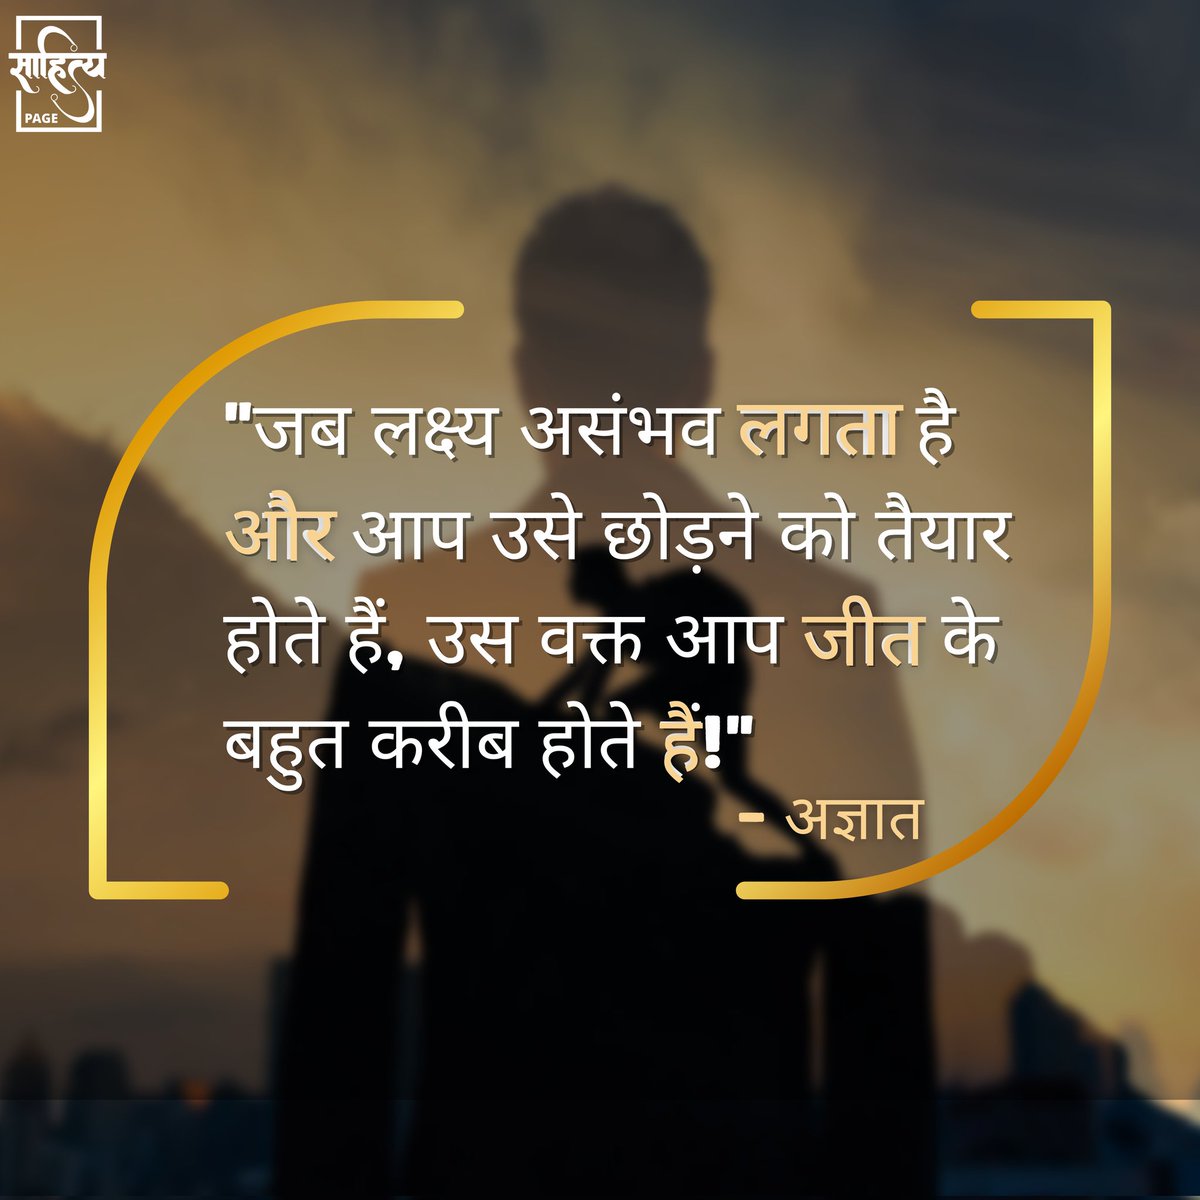 जब लक्ष्य असंभव लगता है और आप उसे छोड़ने को तैयार होते हैं, उस वक्त आप जीत के बहुत करीब होते हैं! 
– अज्ञात 
. 
#SahityaPage #hindiquotes #hindi #quotes #motivation #inspiration #suvichar #lifequote #hindiwriting #hindipoem #motivationalquotes